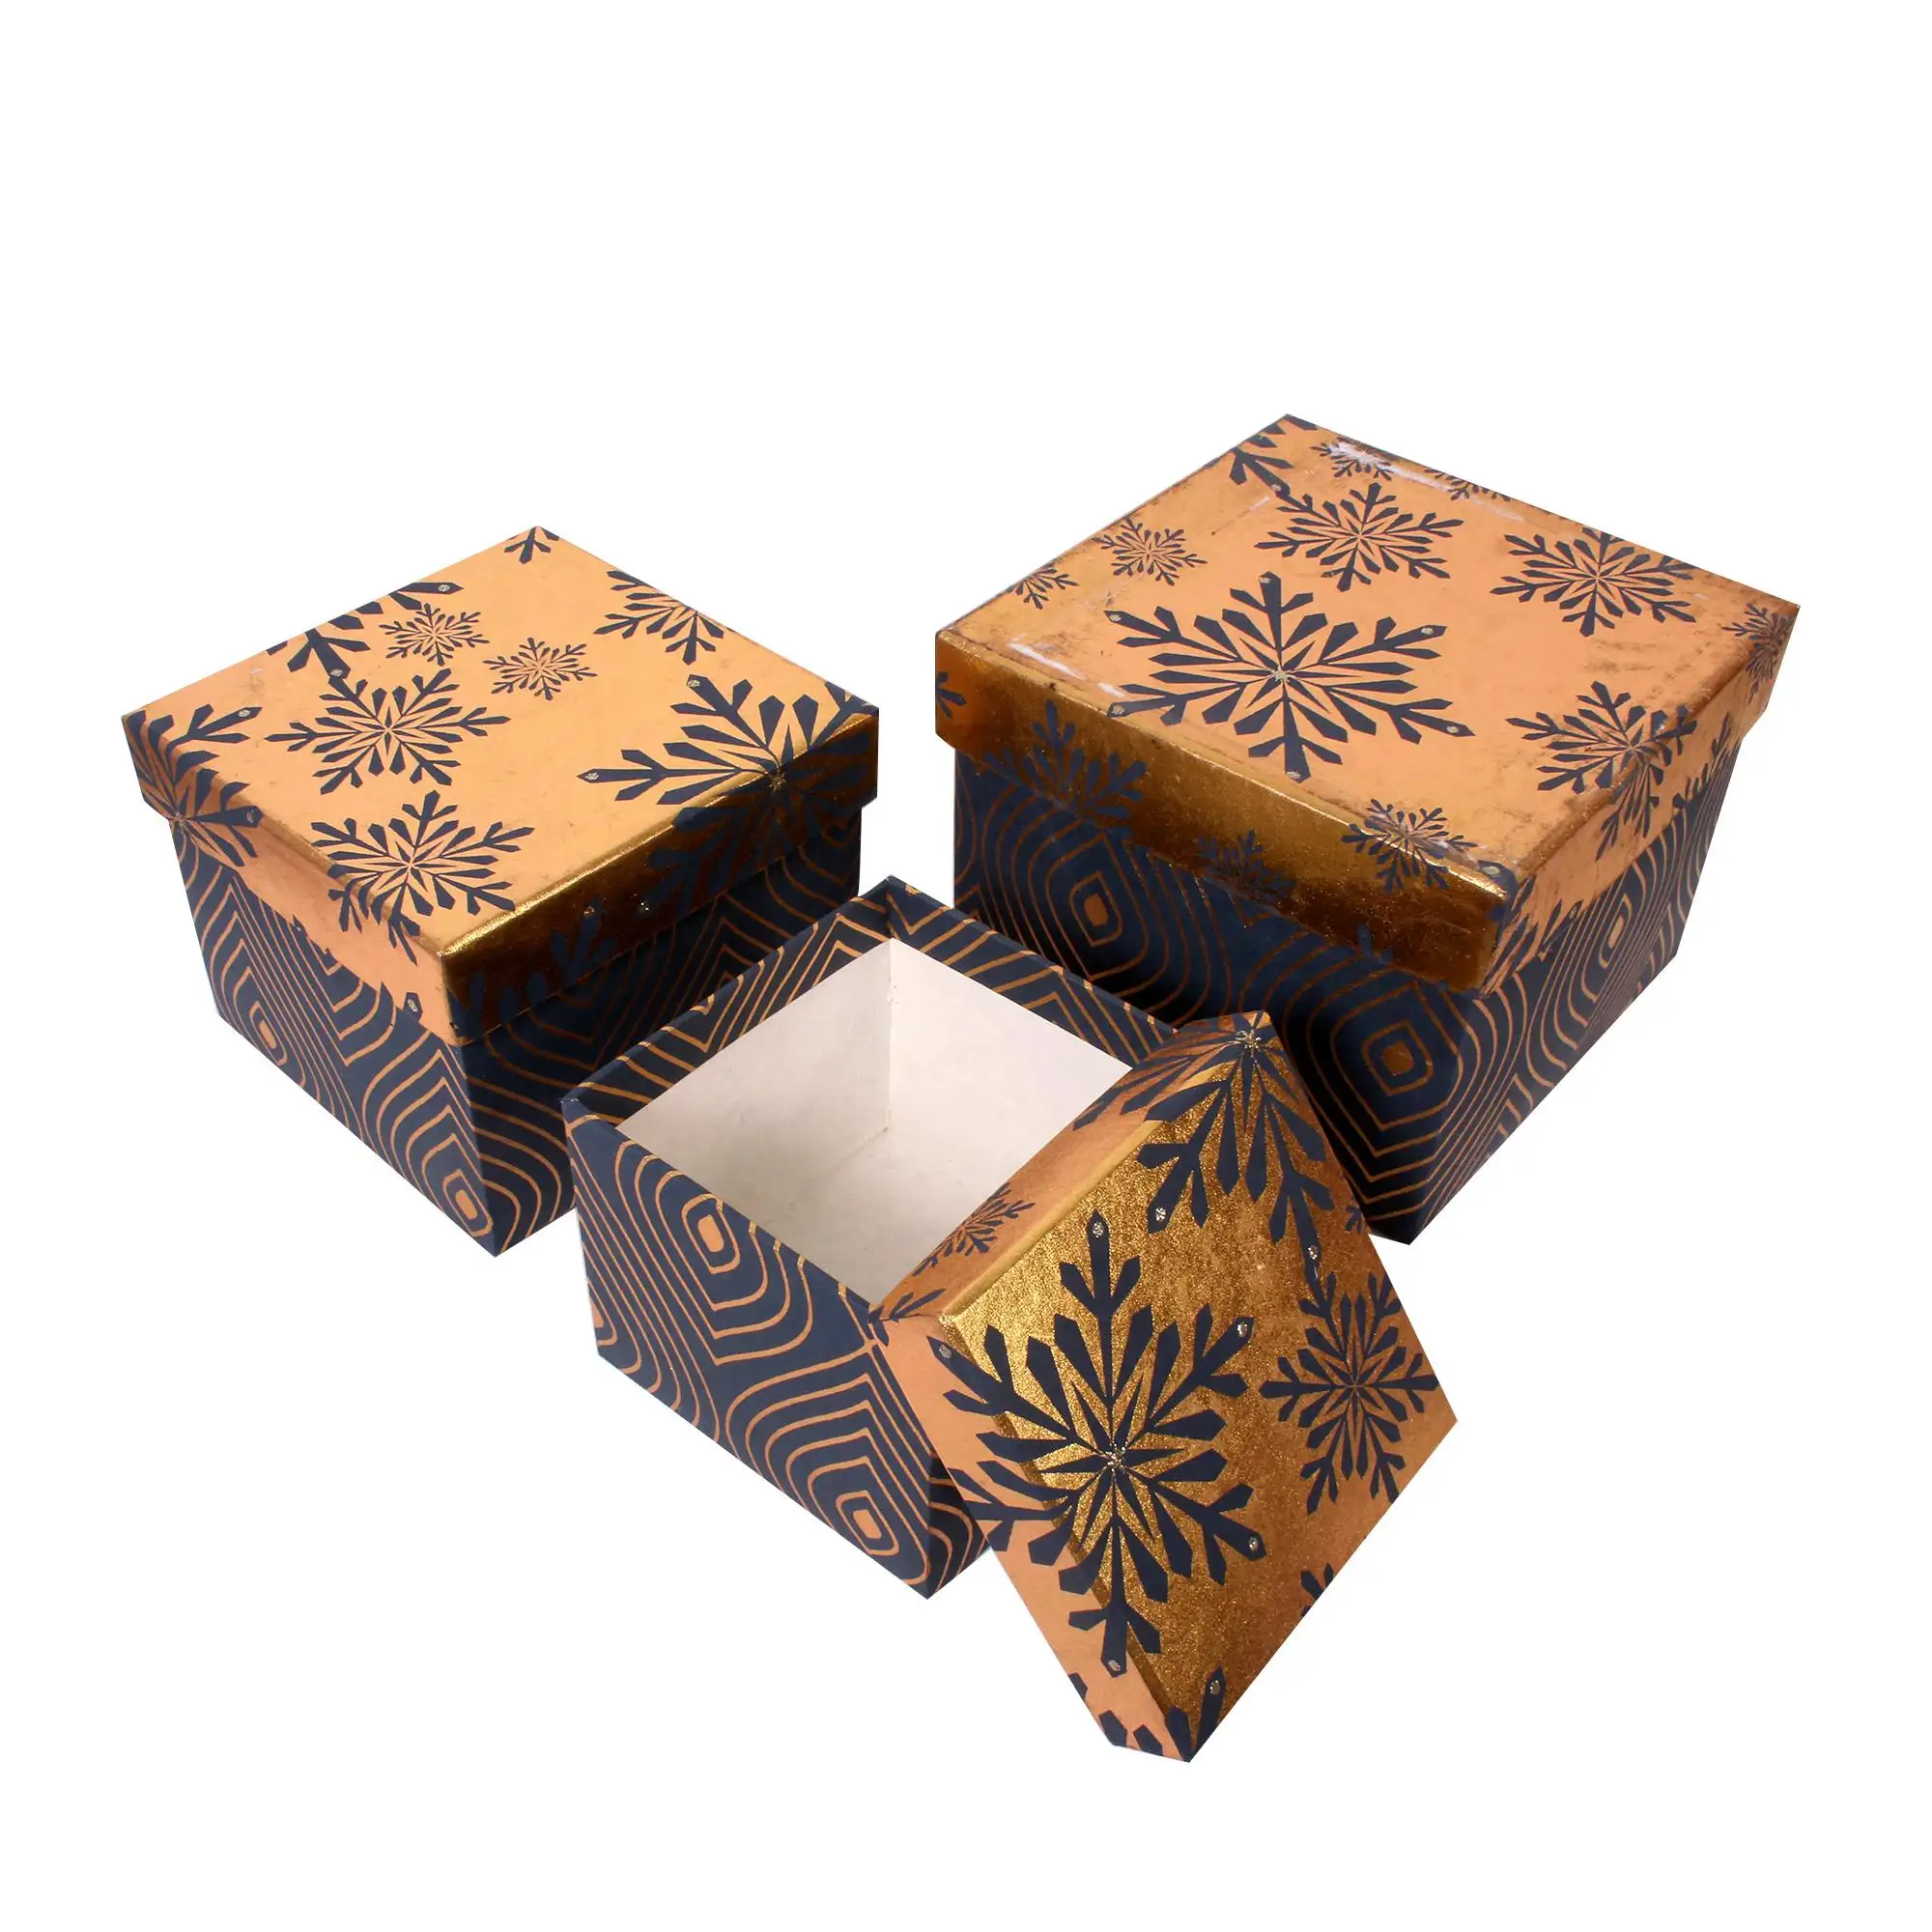 الذهبي صندوق تغليف ورقي هدية الكريسماس 5 "x 5" x 3 "حجم اليدوية كرافت ورقة مربع مخصصة المطبوعة كعكة و هدية علبة التعبئة والتغليف